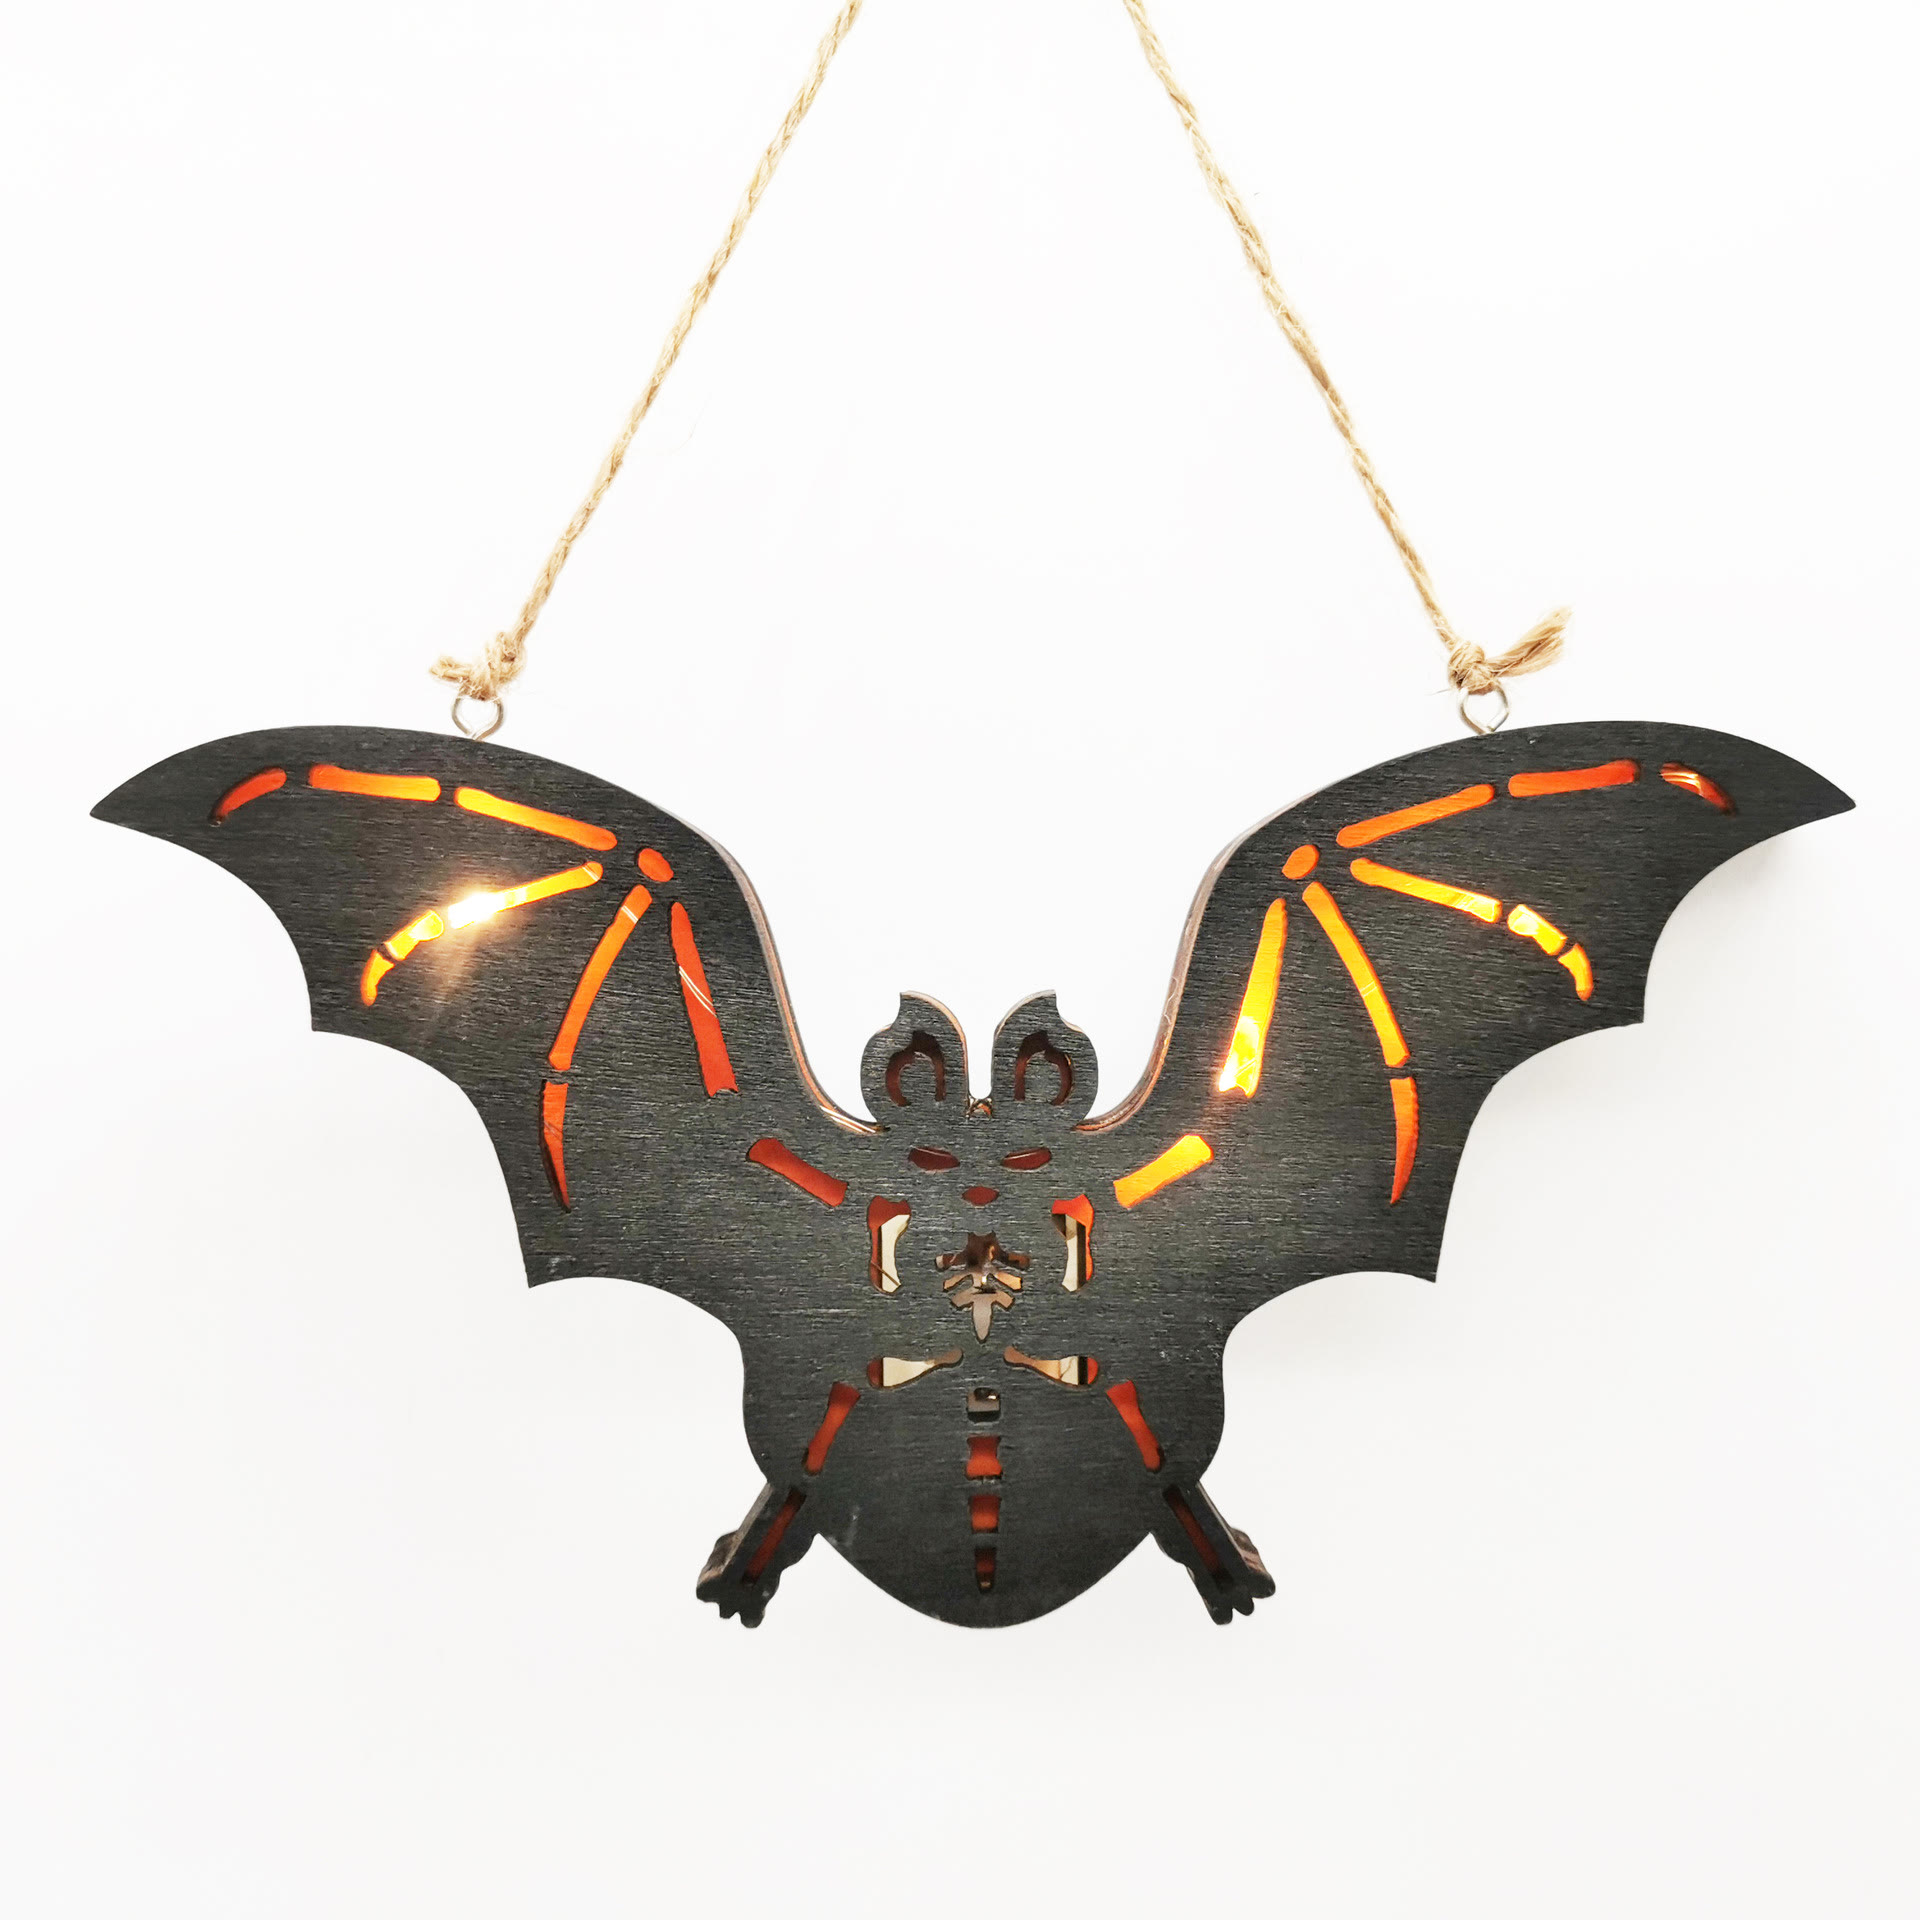 3D Handcraft Wooden Bat Home Decor Lights Wood Halloween Ornaments Gift